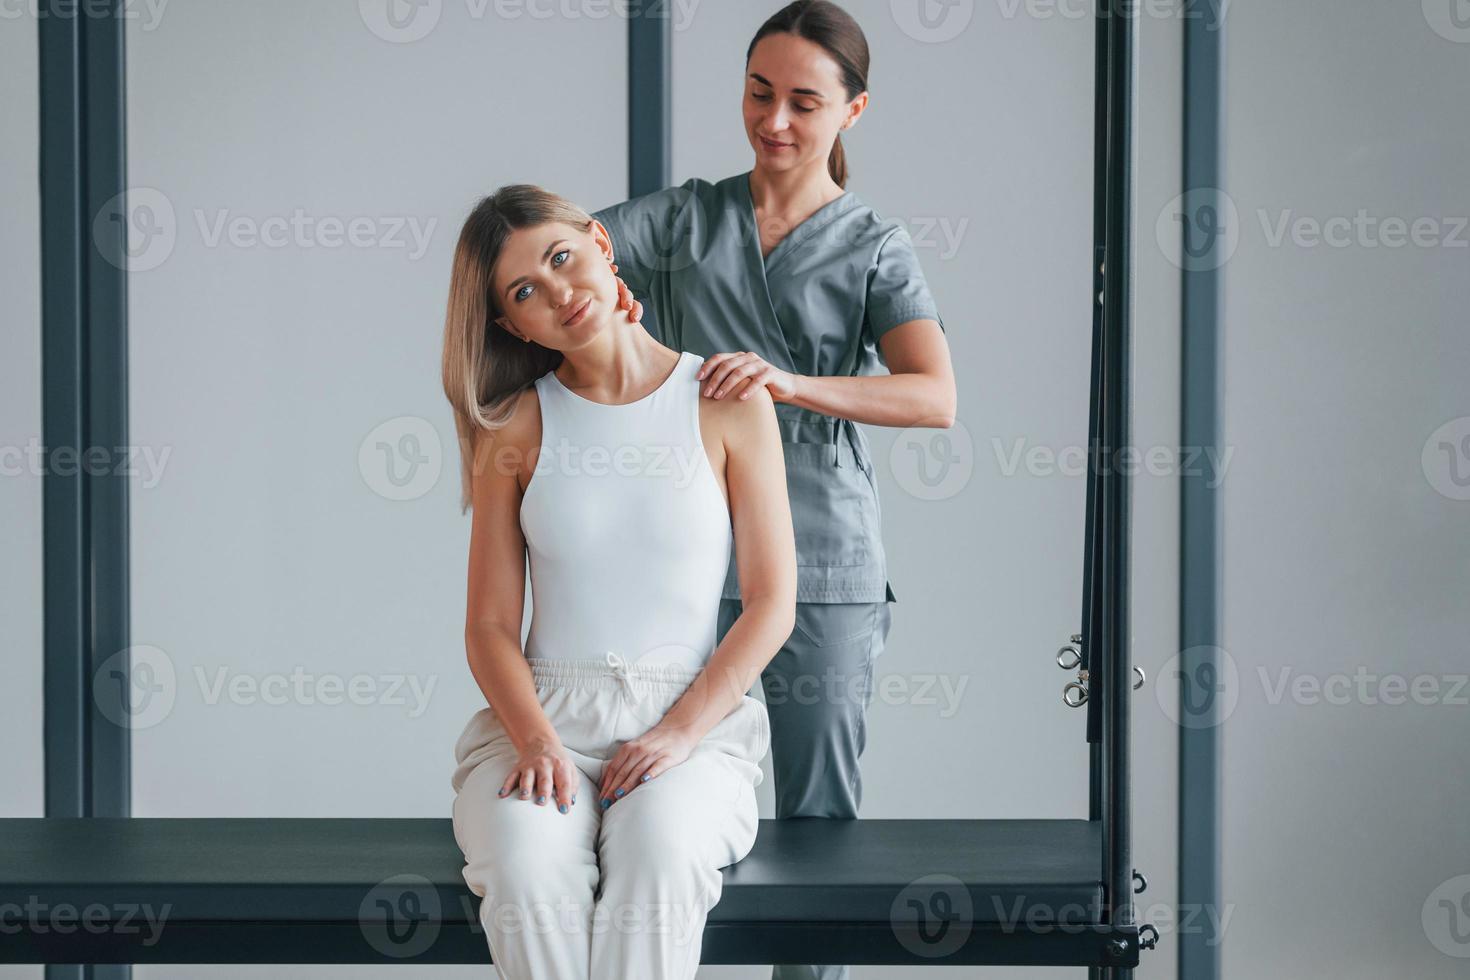 exercices du cou. la femme est au centre de santé et reçoit l'aide d'un médecin photo